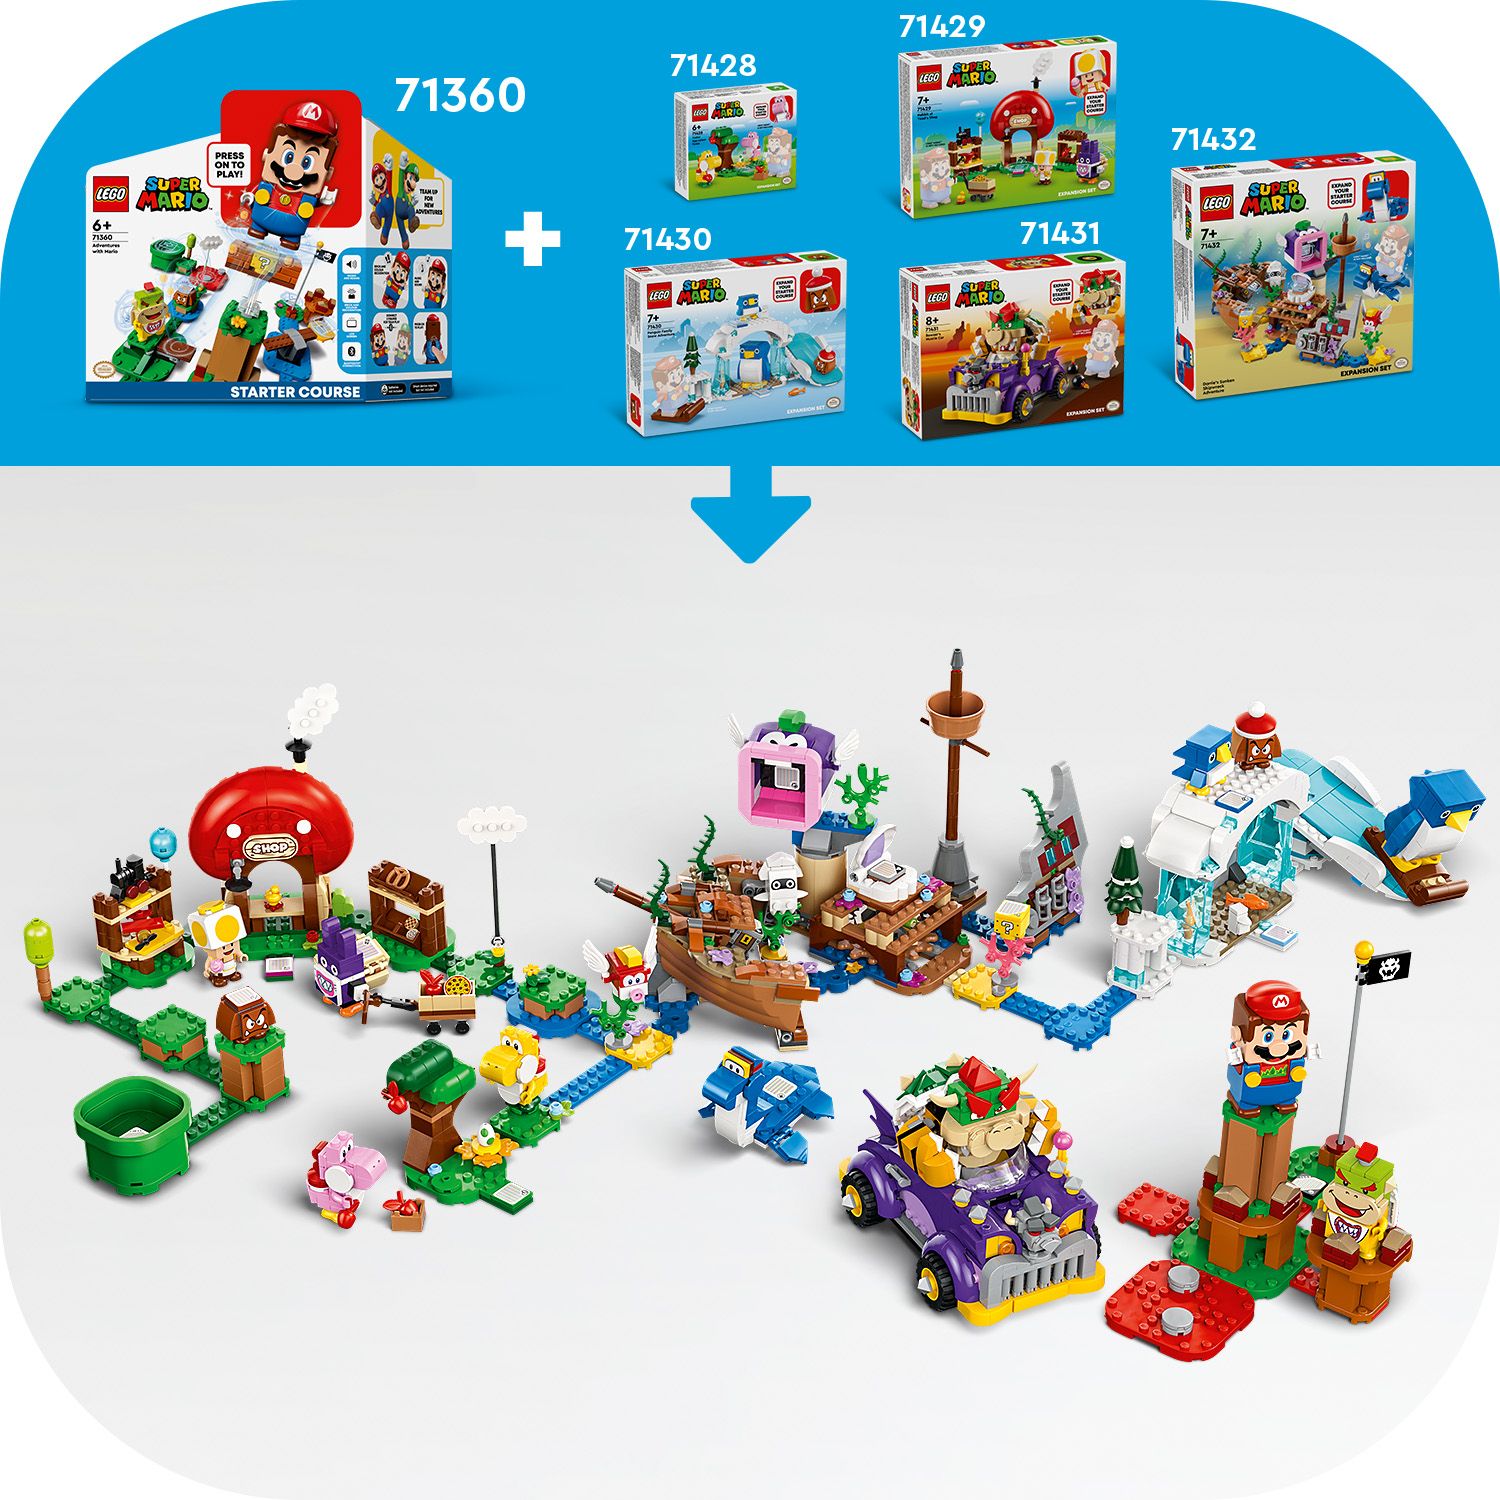 Dárkový set LEGO® Super Mario™ pro milovníky her